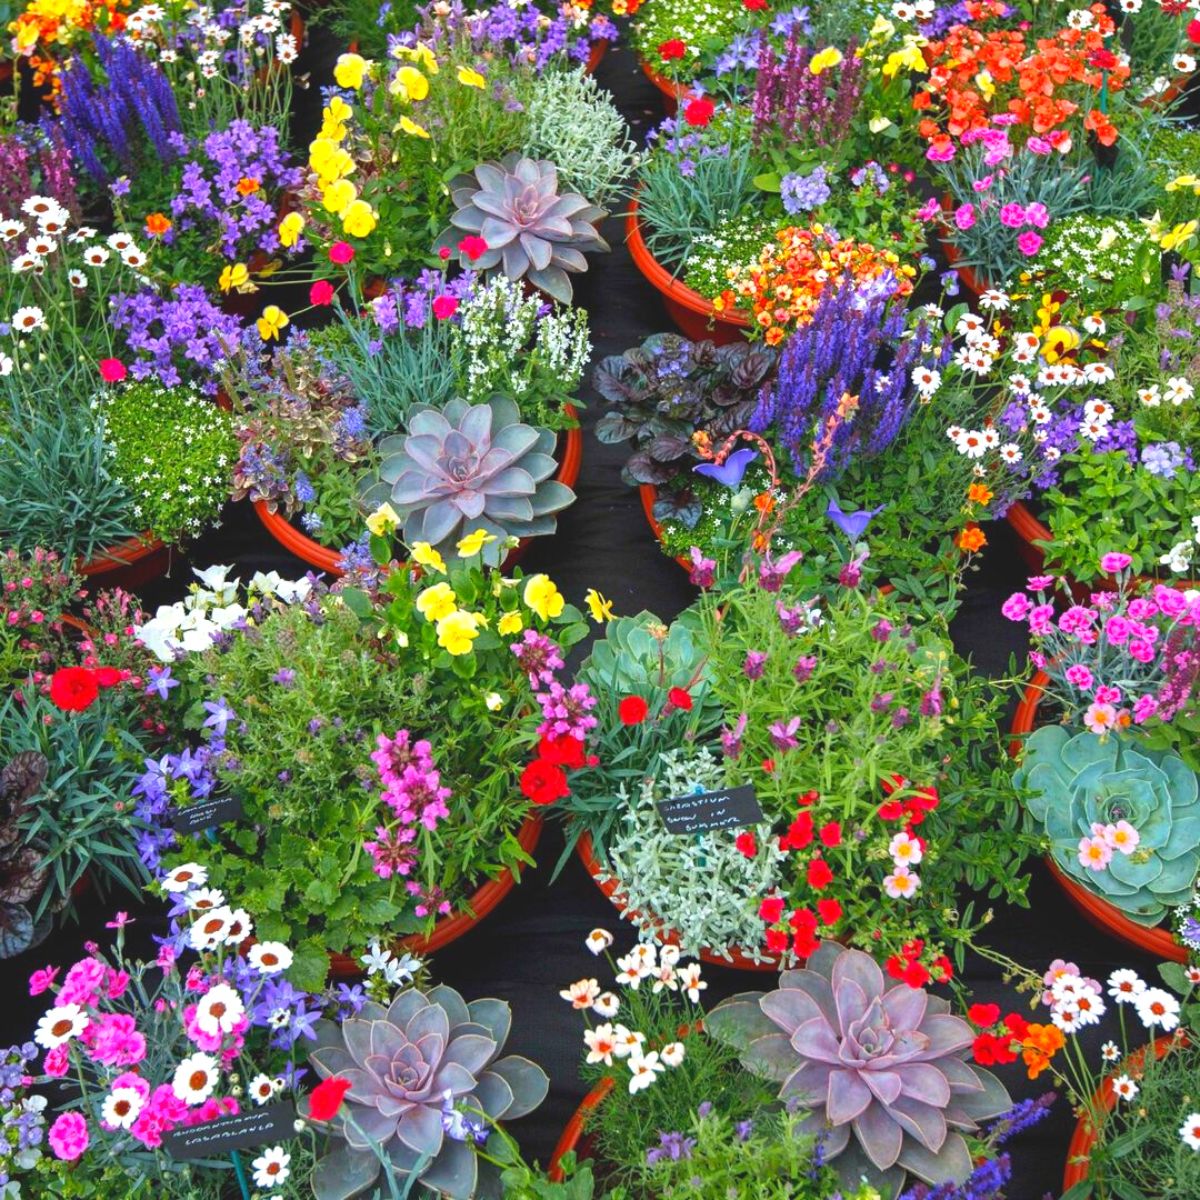 Flower displays at the Rosemoor Garden Show